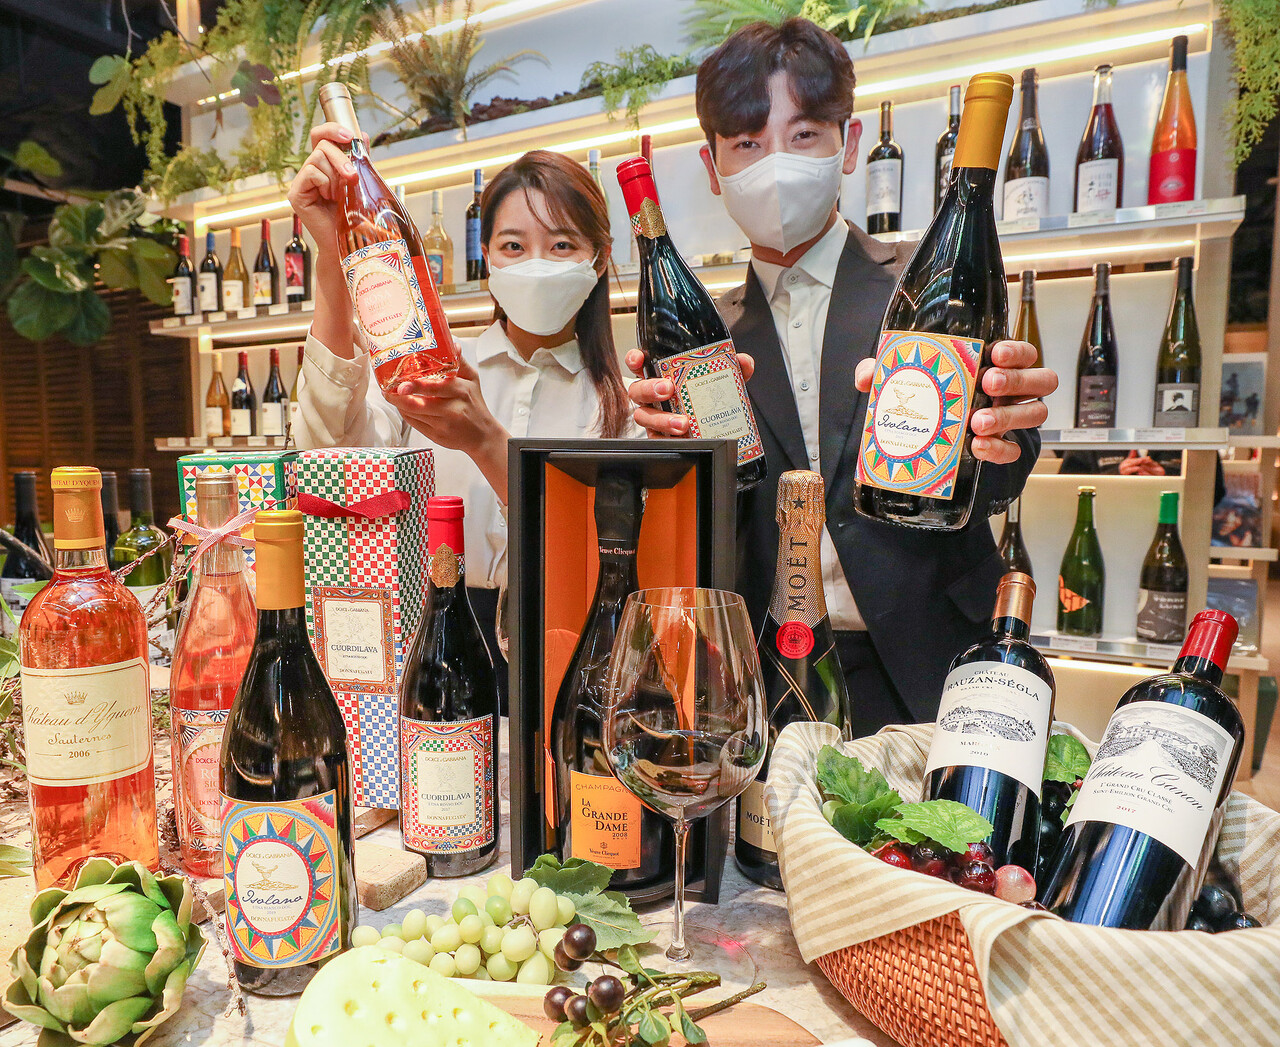 현대백화점은 31일까지 진행되는 설 선물세트 판매 기간 전국 16개 식품관에서 글로벌 럭셔리 브랜드 소속 와이너리의 와인을 판매한다. [사진제공=현대백화점]